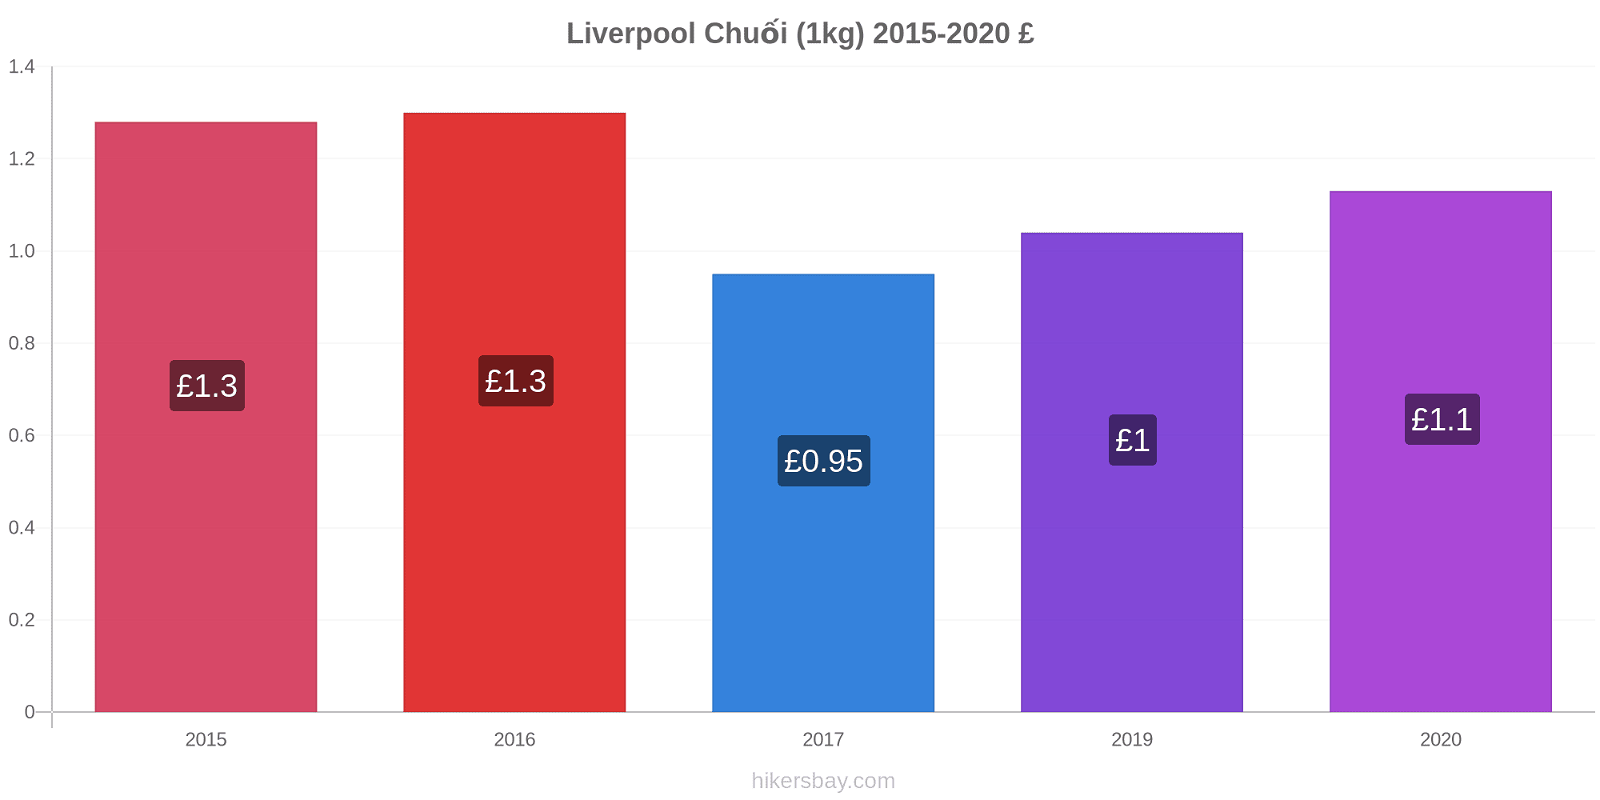 Liverpool thay đổi giá Chuối (1kg) hikersbay.com